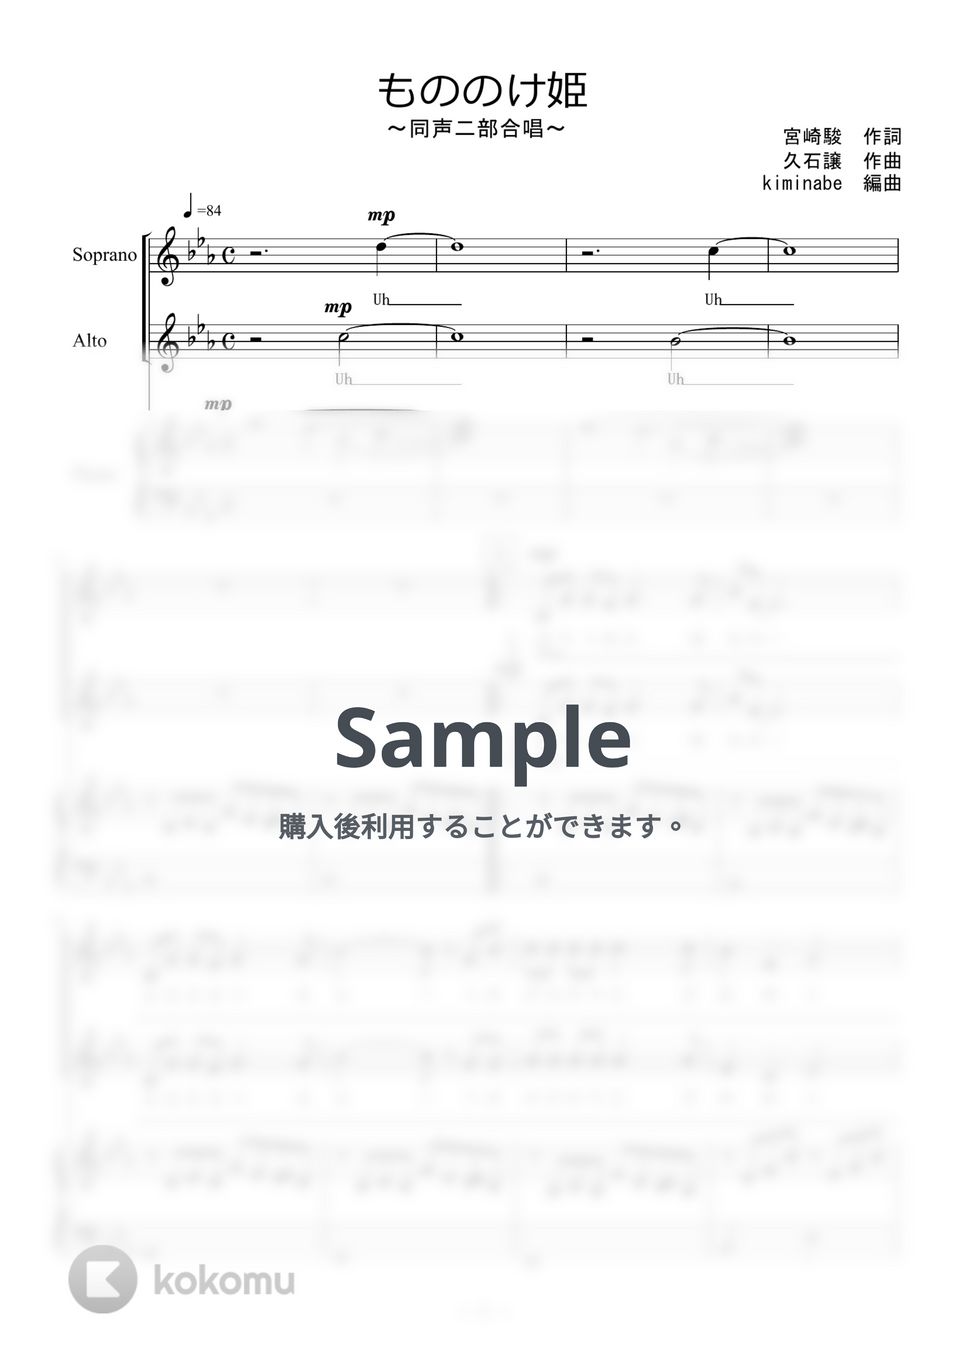 久石譲 - もののけ姫 (同声二部合唱) by kiminabe